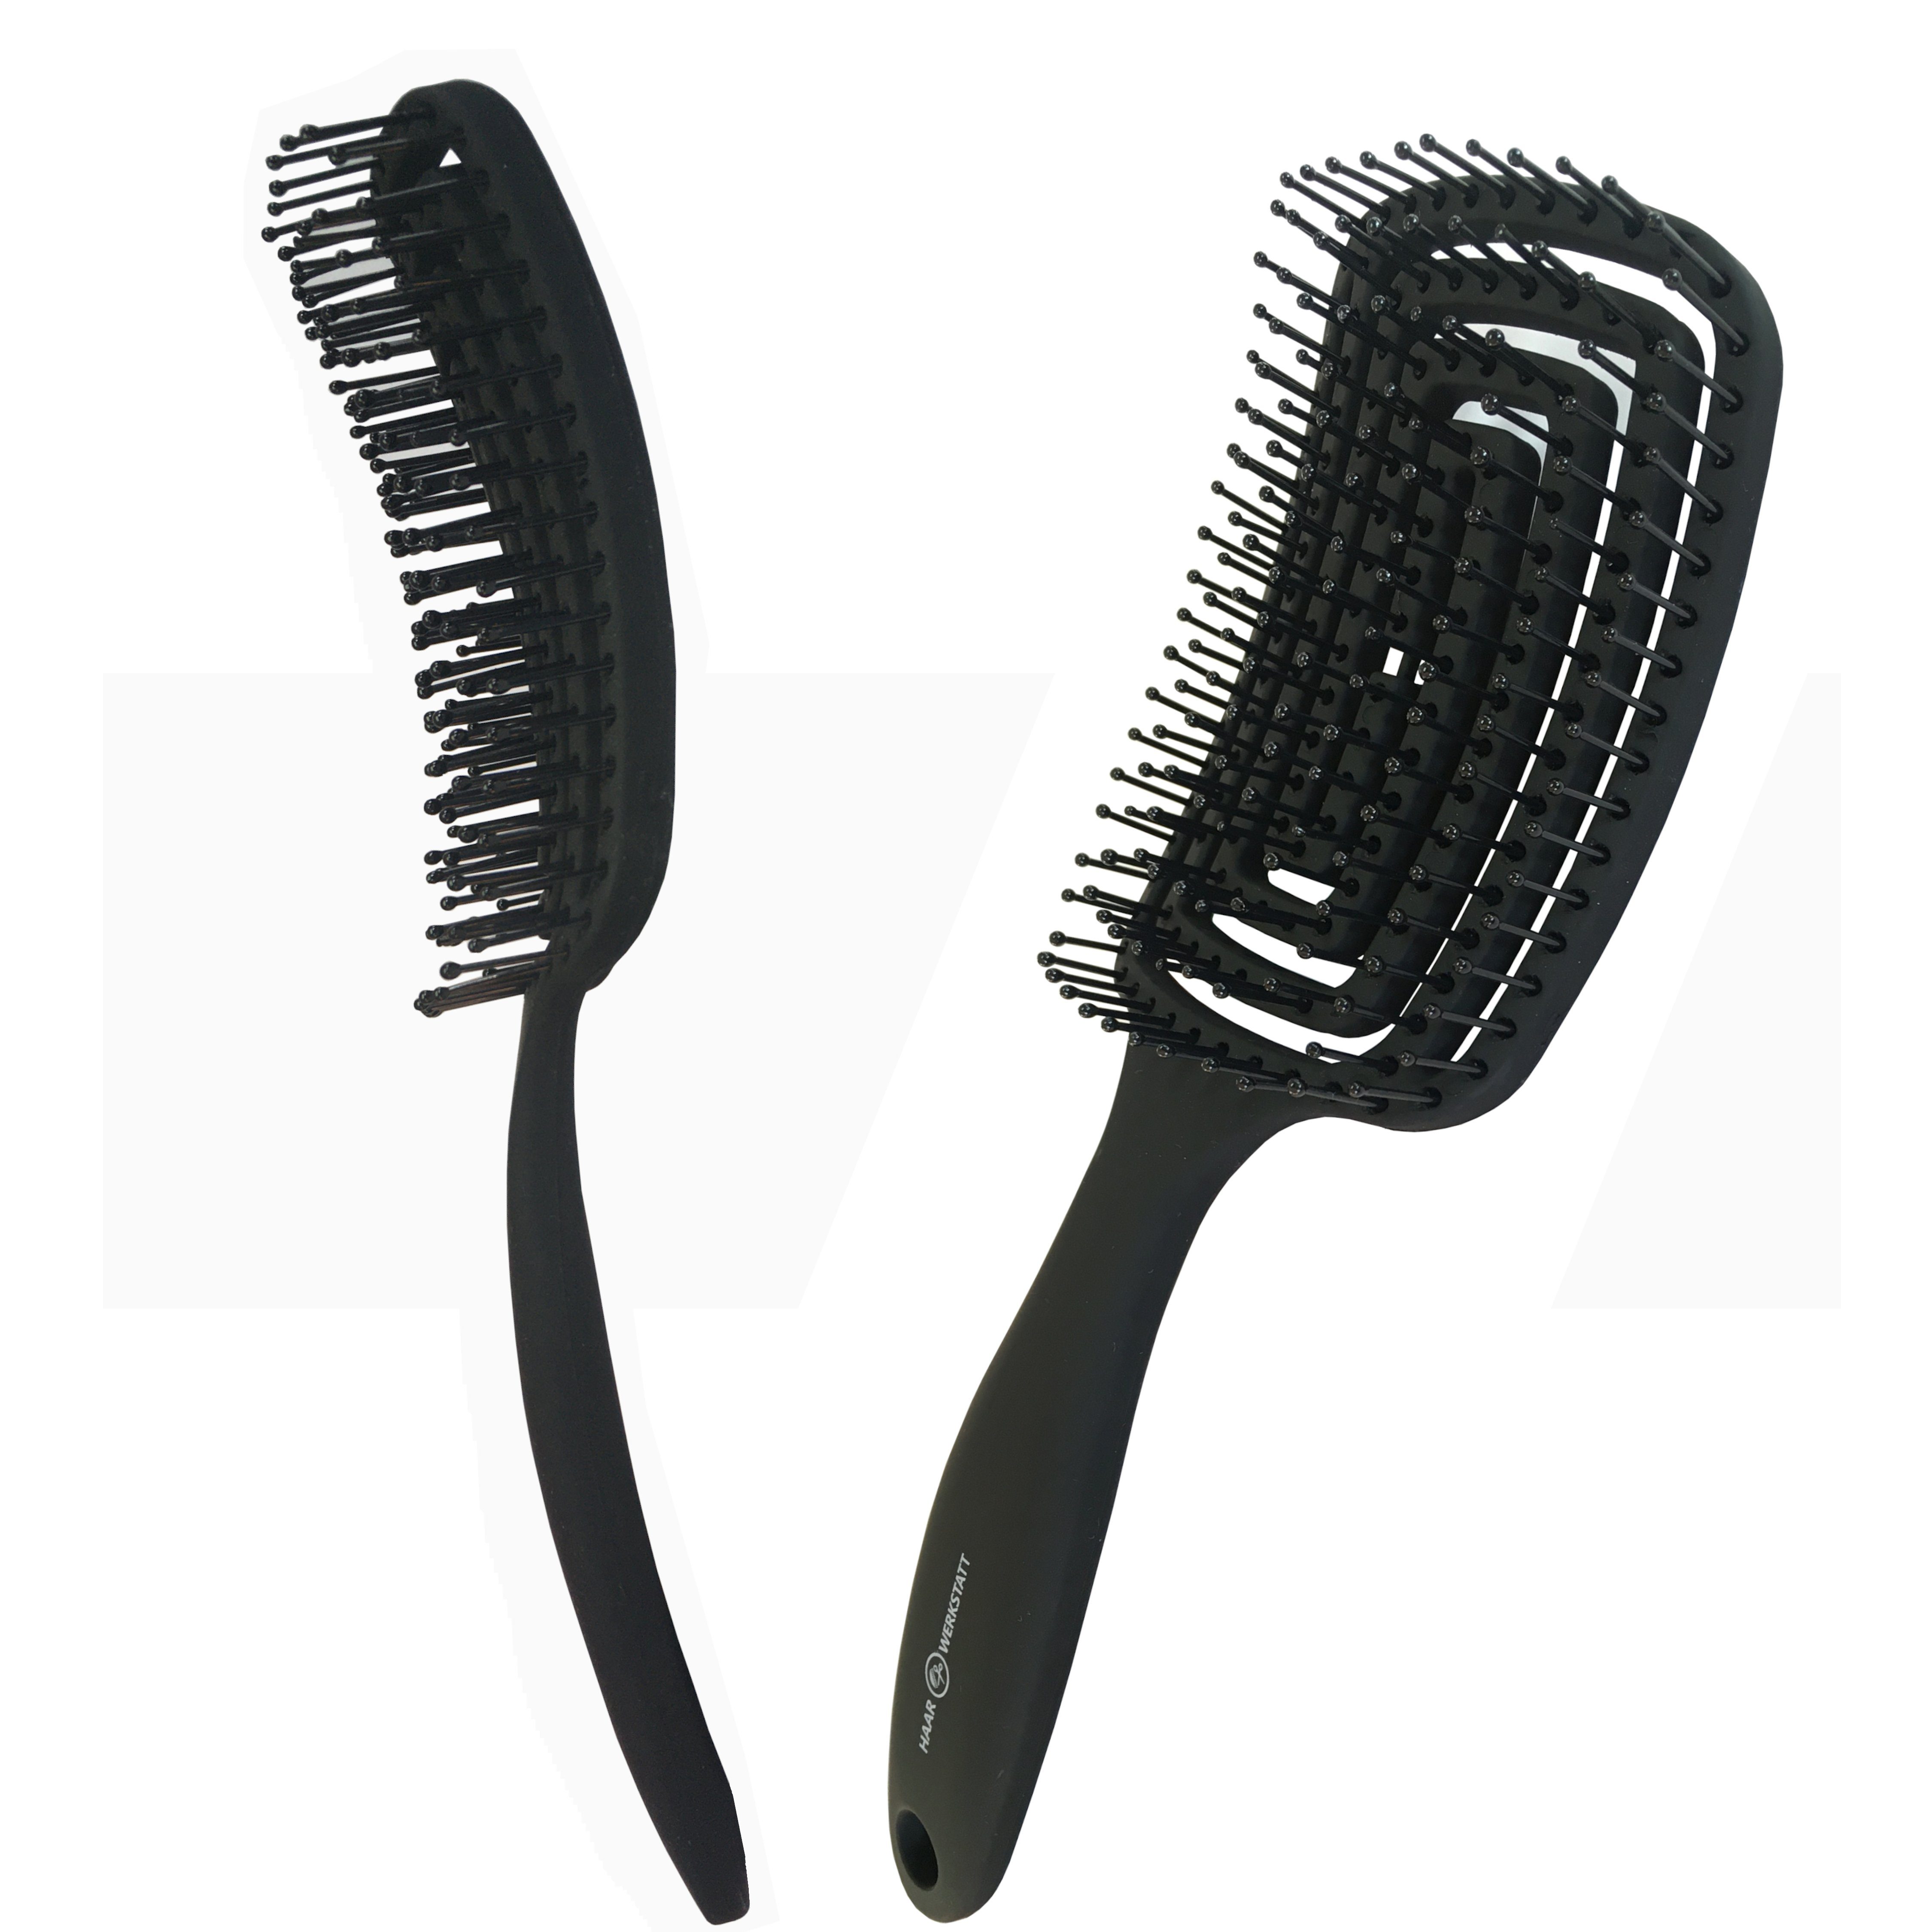 Haarwerkstatt Haarbürste Profi Haarbürste für Damen, Herren und Kinder - Die optimale Entwirrungsbürste für Ihr Haar, Gebogene Haarbürste mit weiche Borsten - curved brush Schwarz